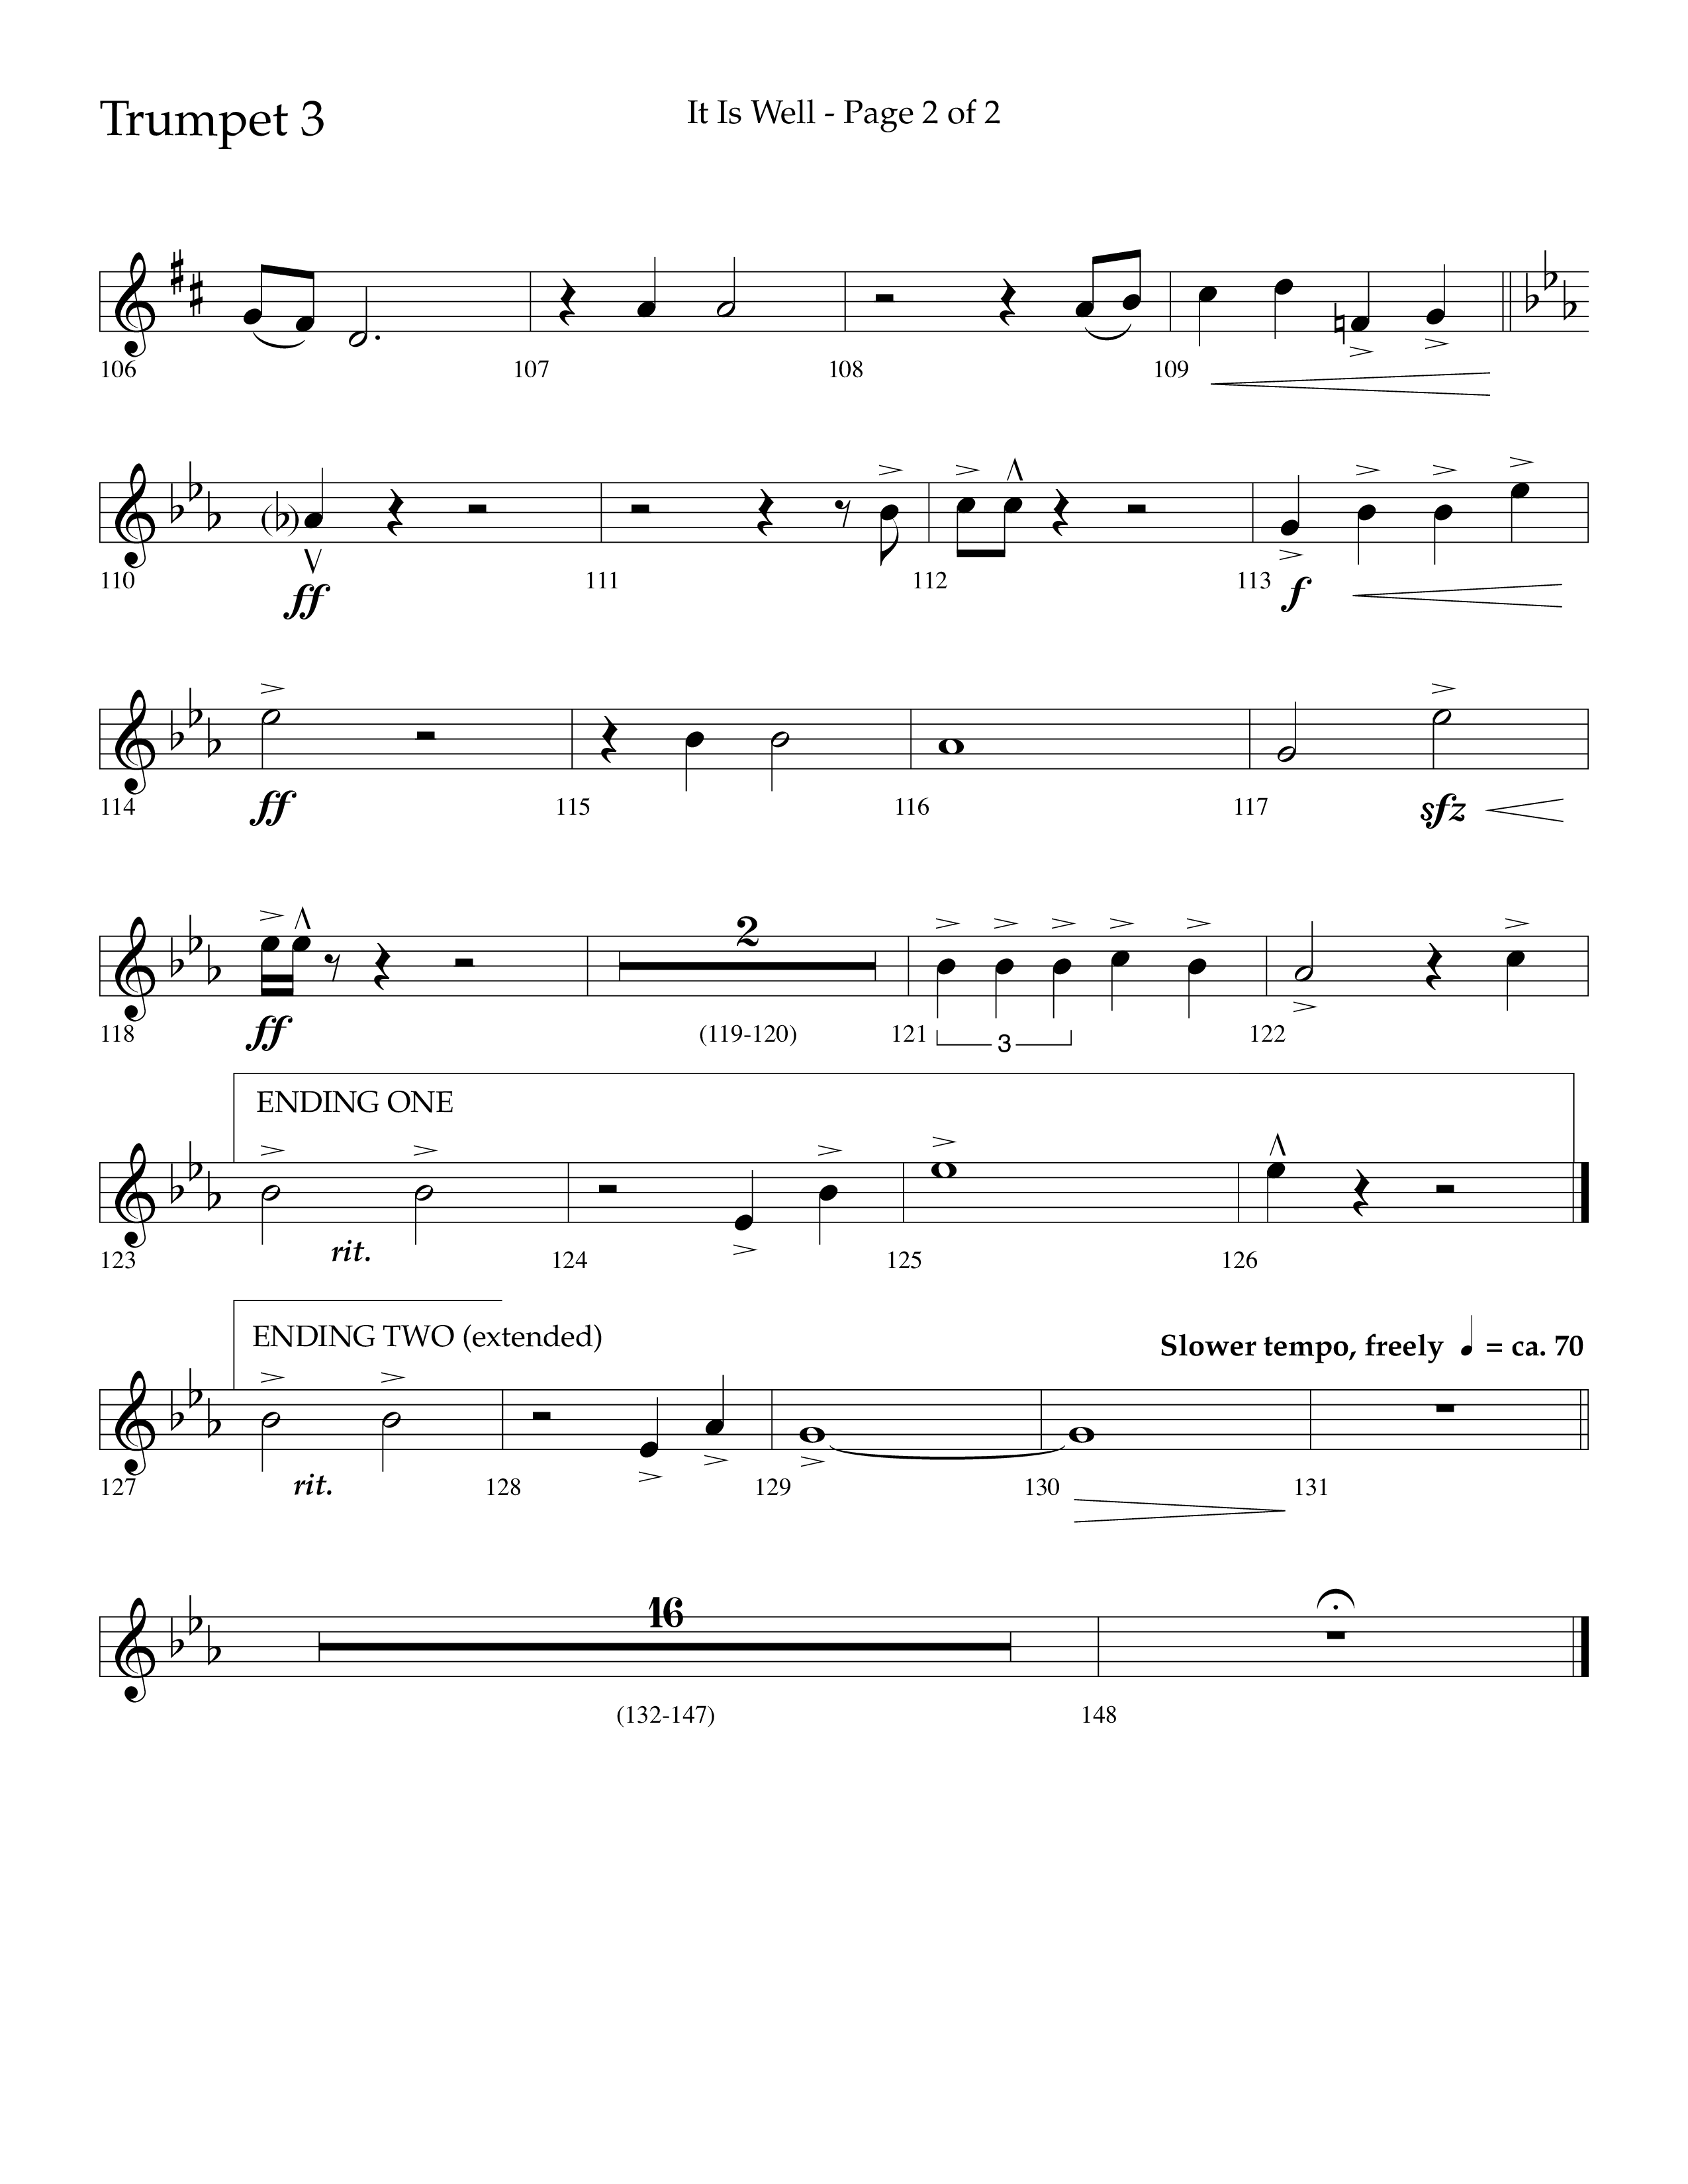 It Is Well (Choral Anthem SATB) Trumpet 3 (Lifeway Choral / Arr. Cliff Duren)